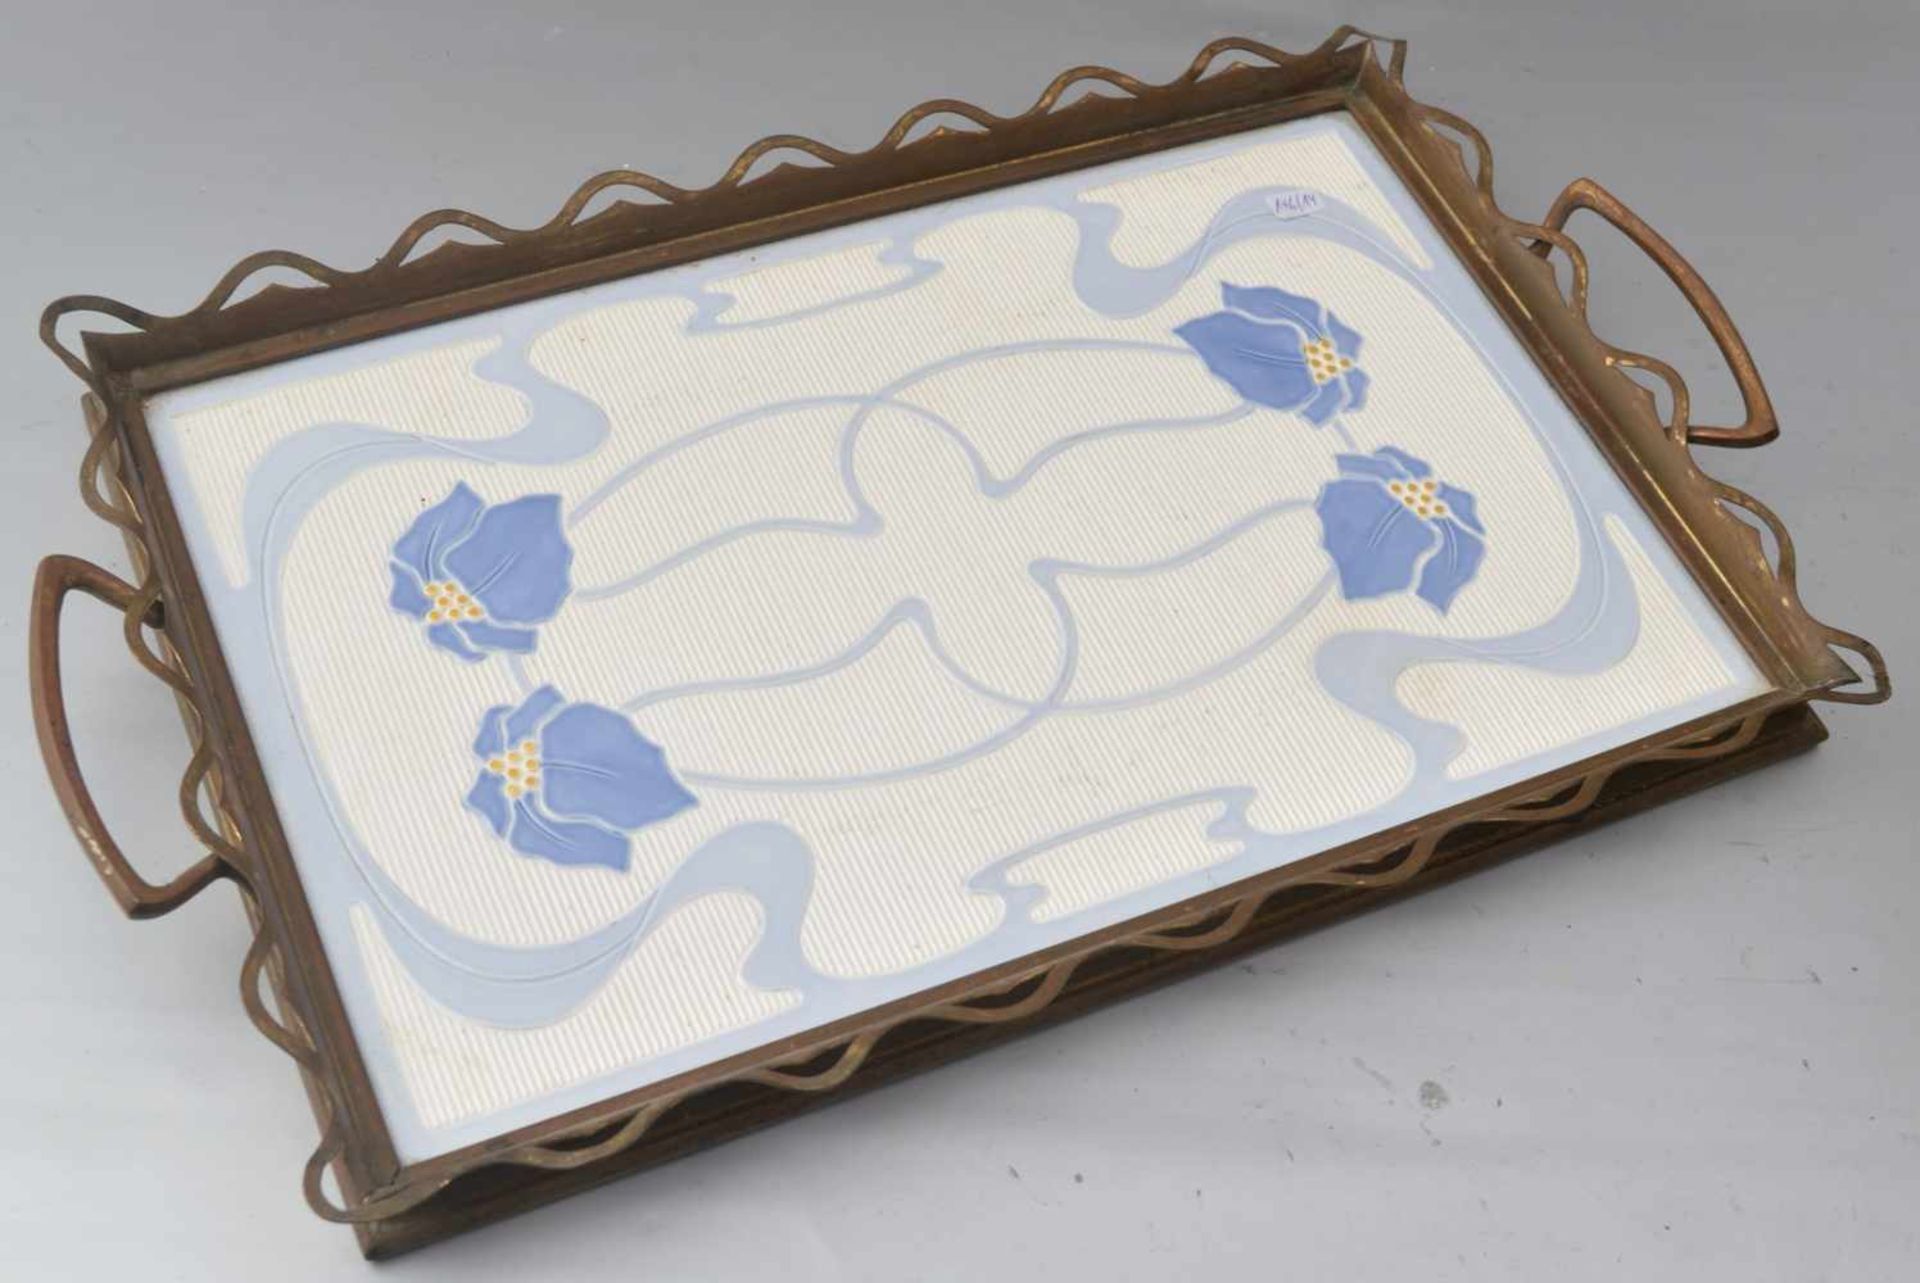 Jugendstil-Tablett durchbrochener verzierter Metallrand, Spiegel mit blau/gelben Blüten verziert, 26